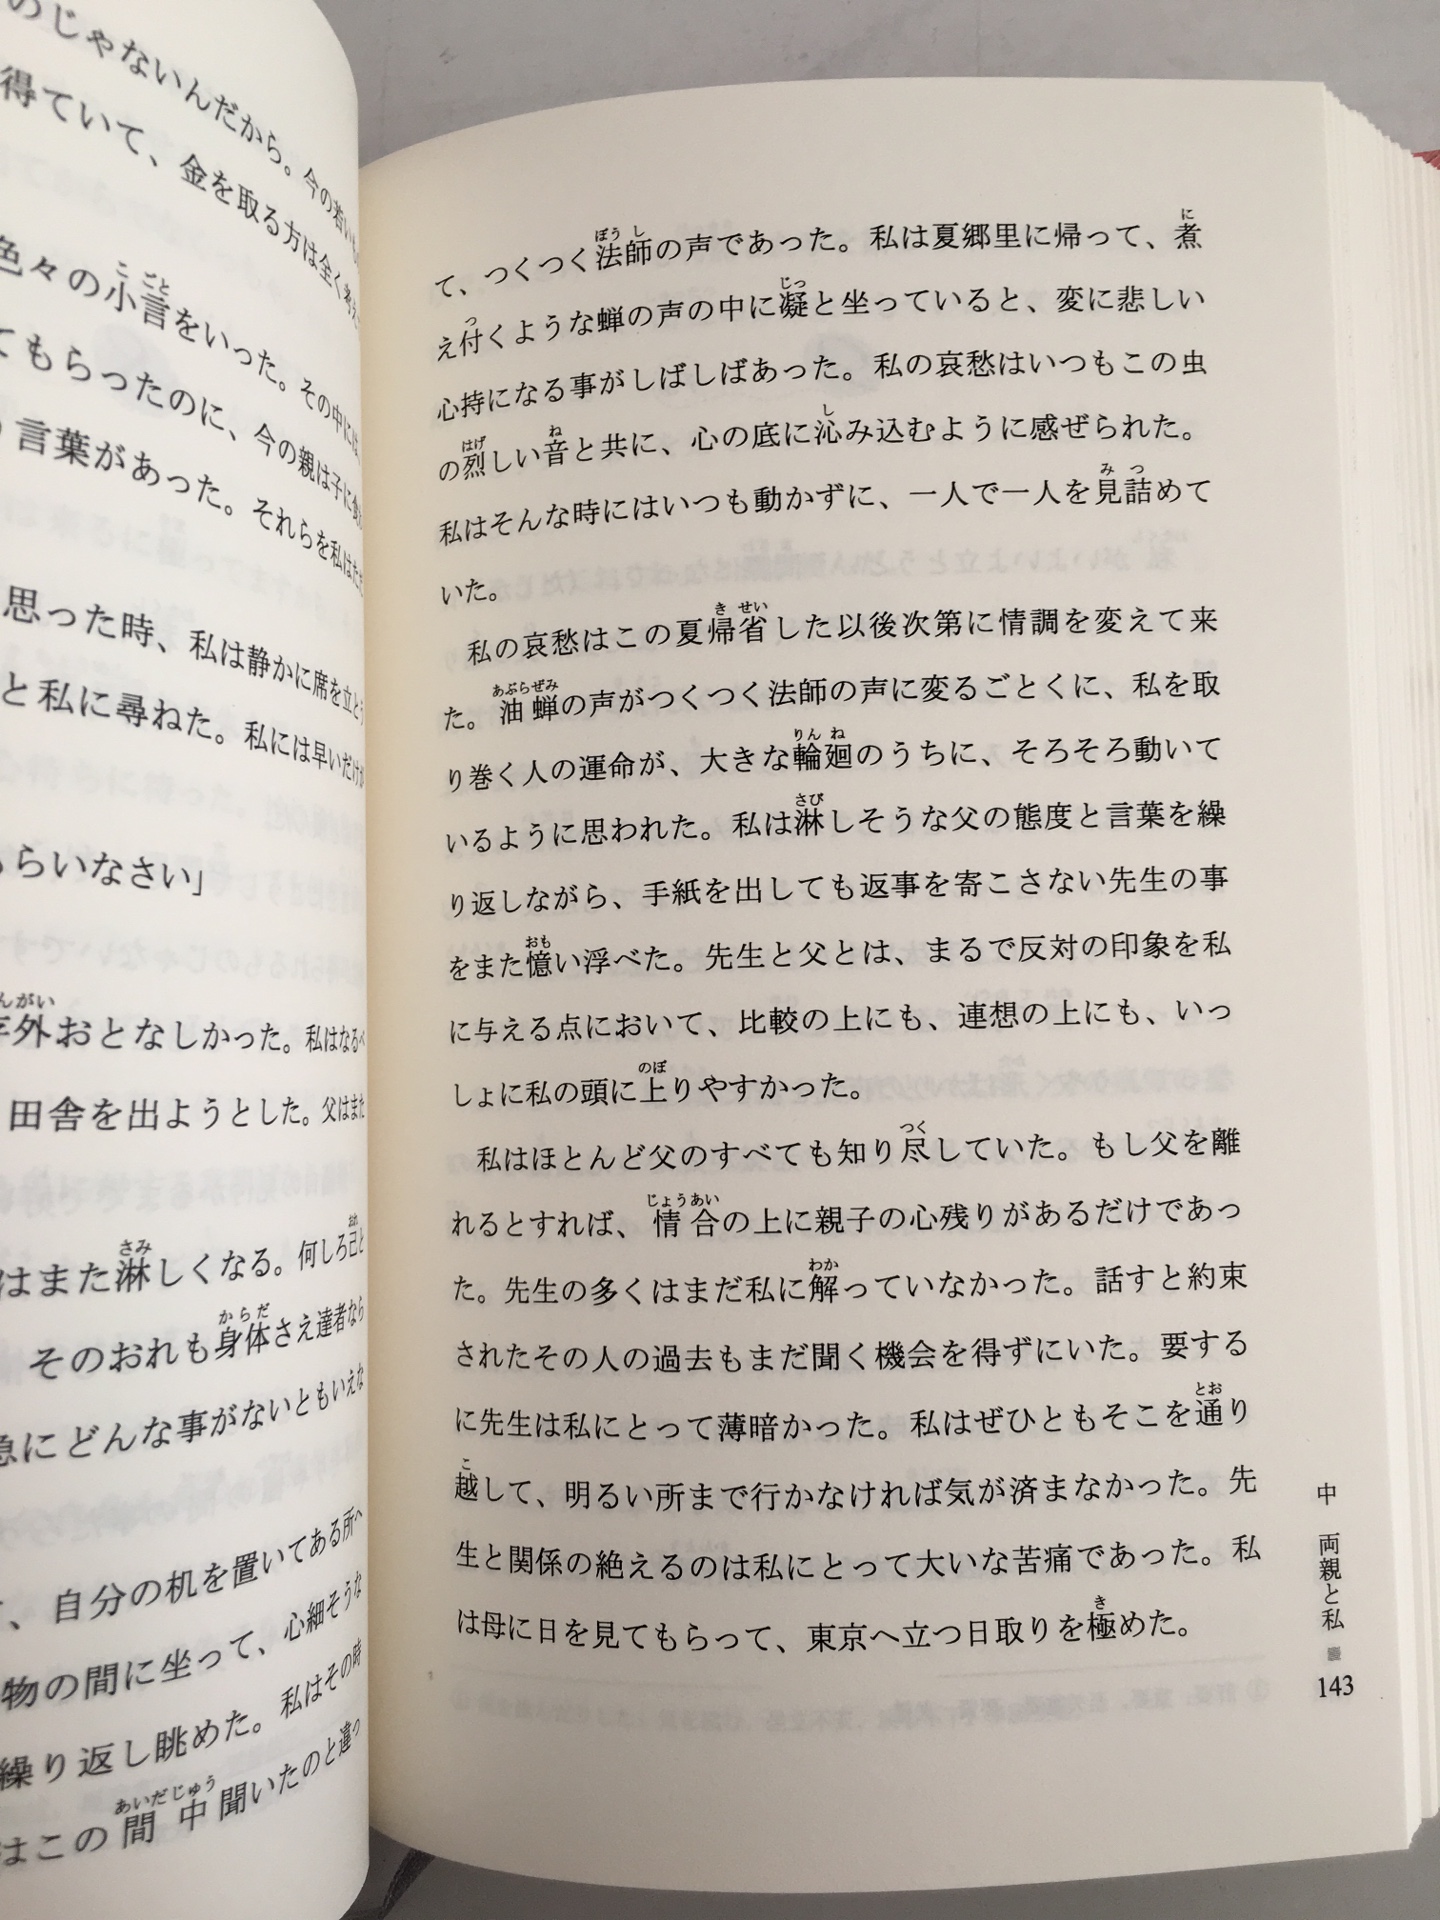 很经典的一本书，前半本是日文原著，可以帮助学习日语，很好